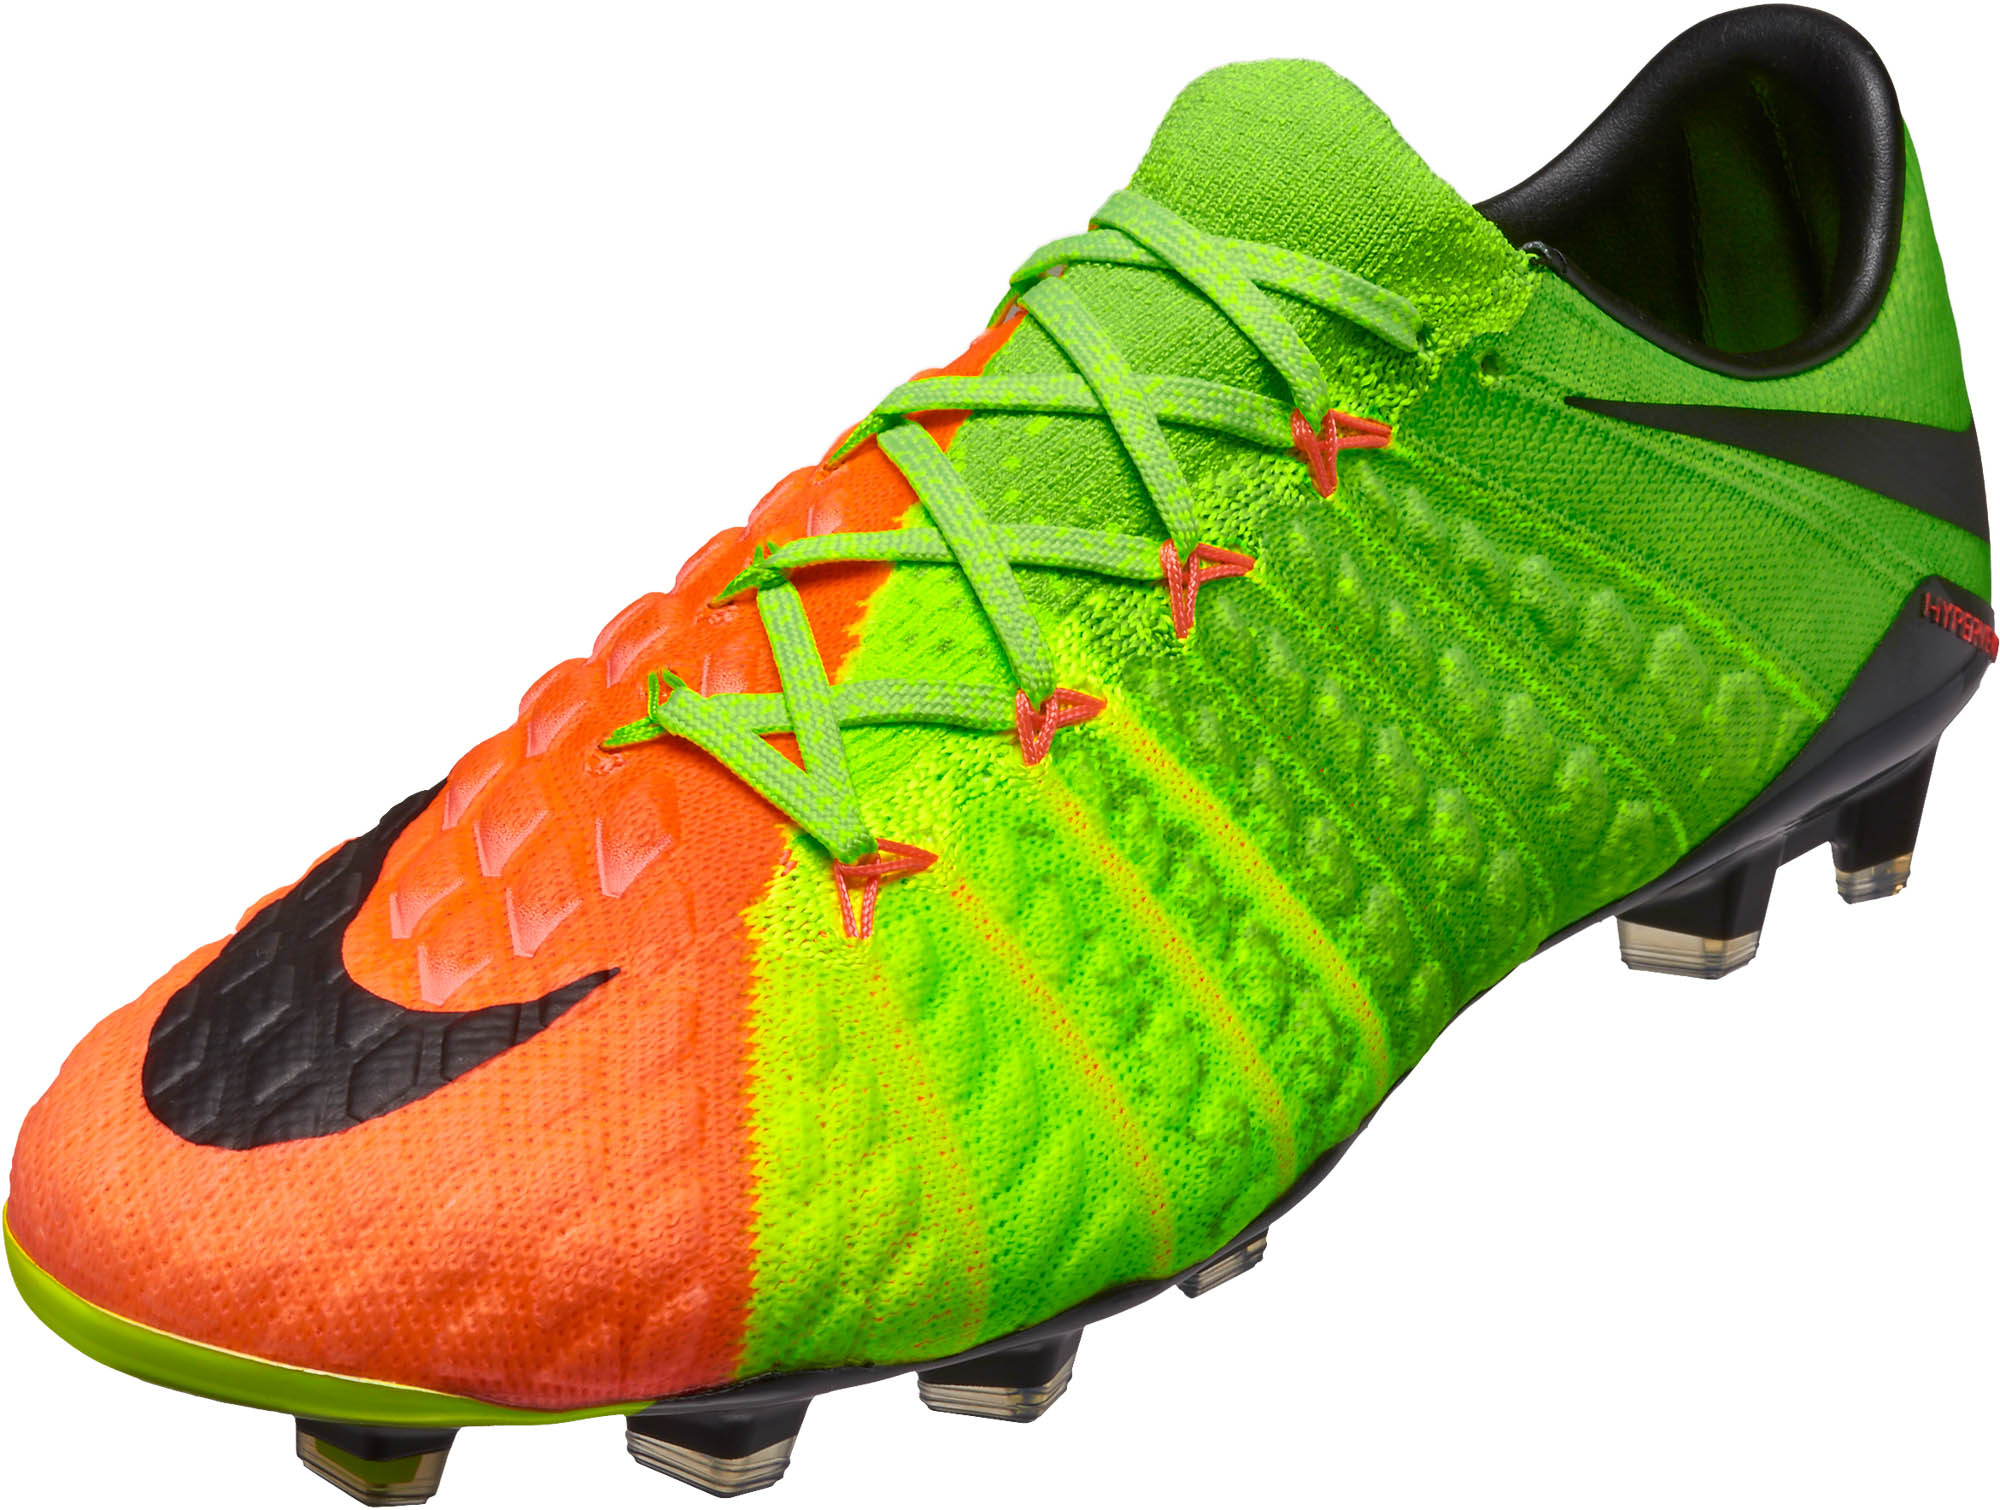 Nike Hypervenom Phantom III FG Soccer Cleats - Electric Green & Hyper  Orange - Soccer Master